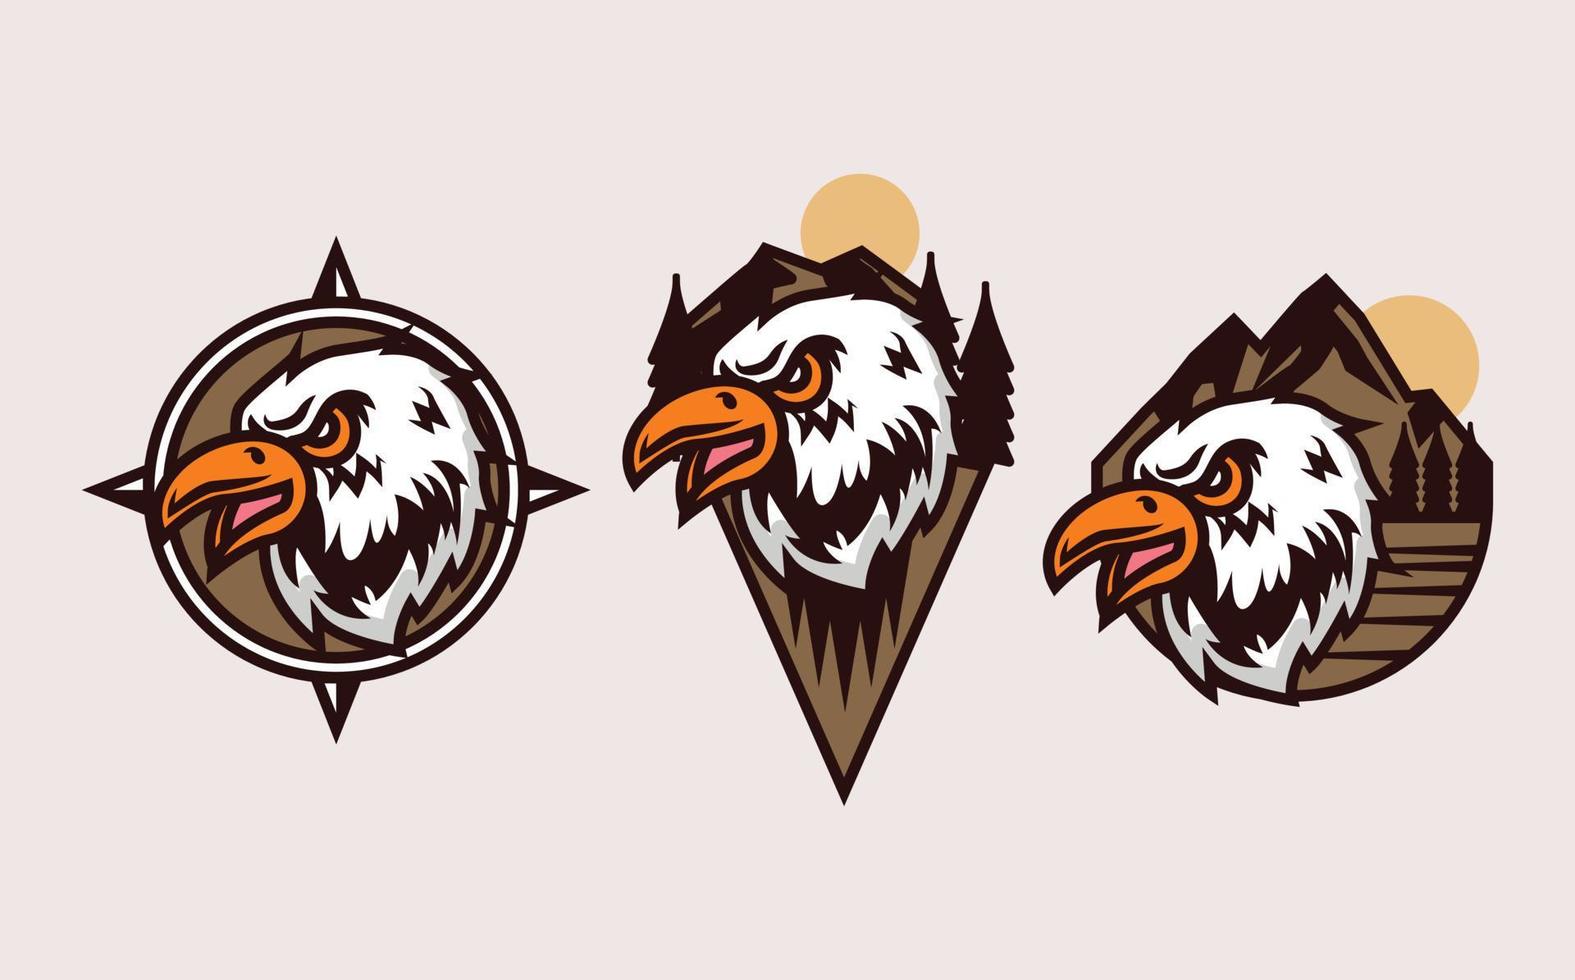 Retro eagle adventure mascot logo design vector